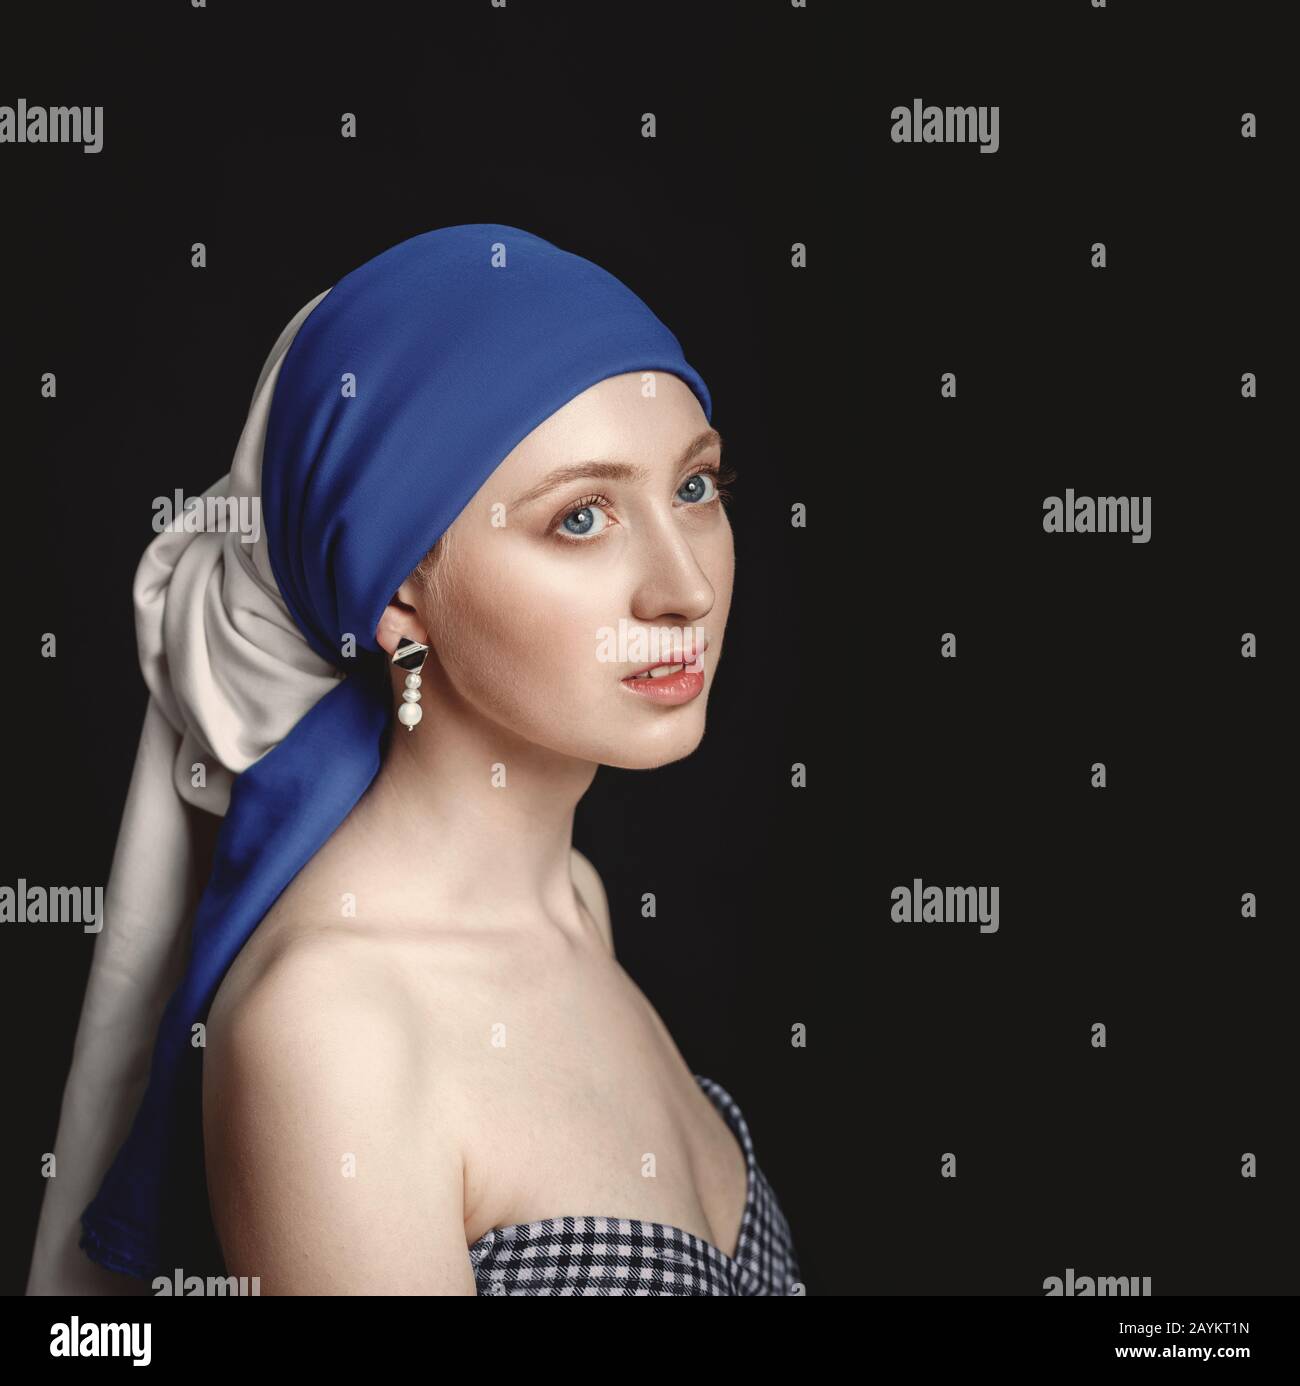 Porträt einer Frau mit Perlenohrring, inspiriert vom Gemälde des großen  Barock- und Renaissancekünstlers Jan Vermeer Stockfotografie - Alamy